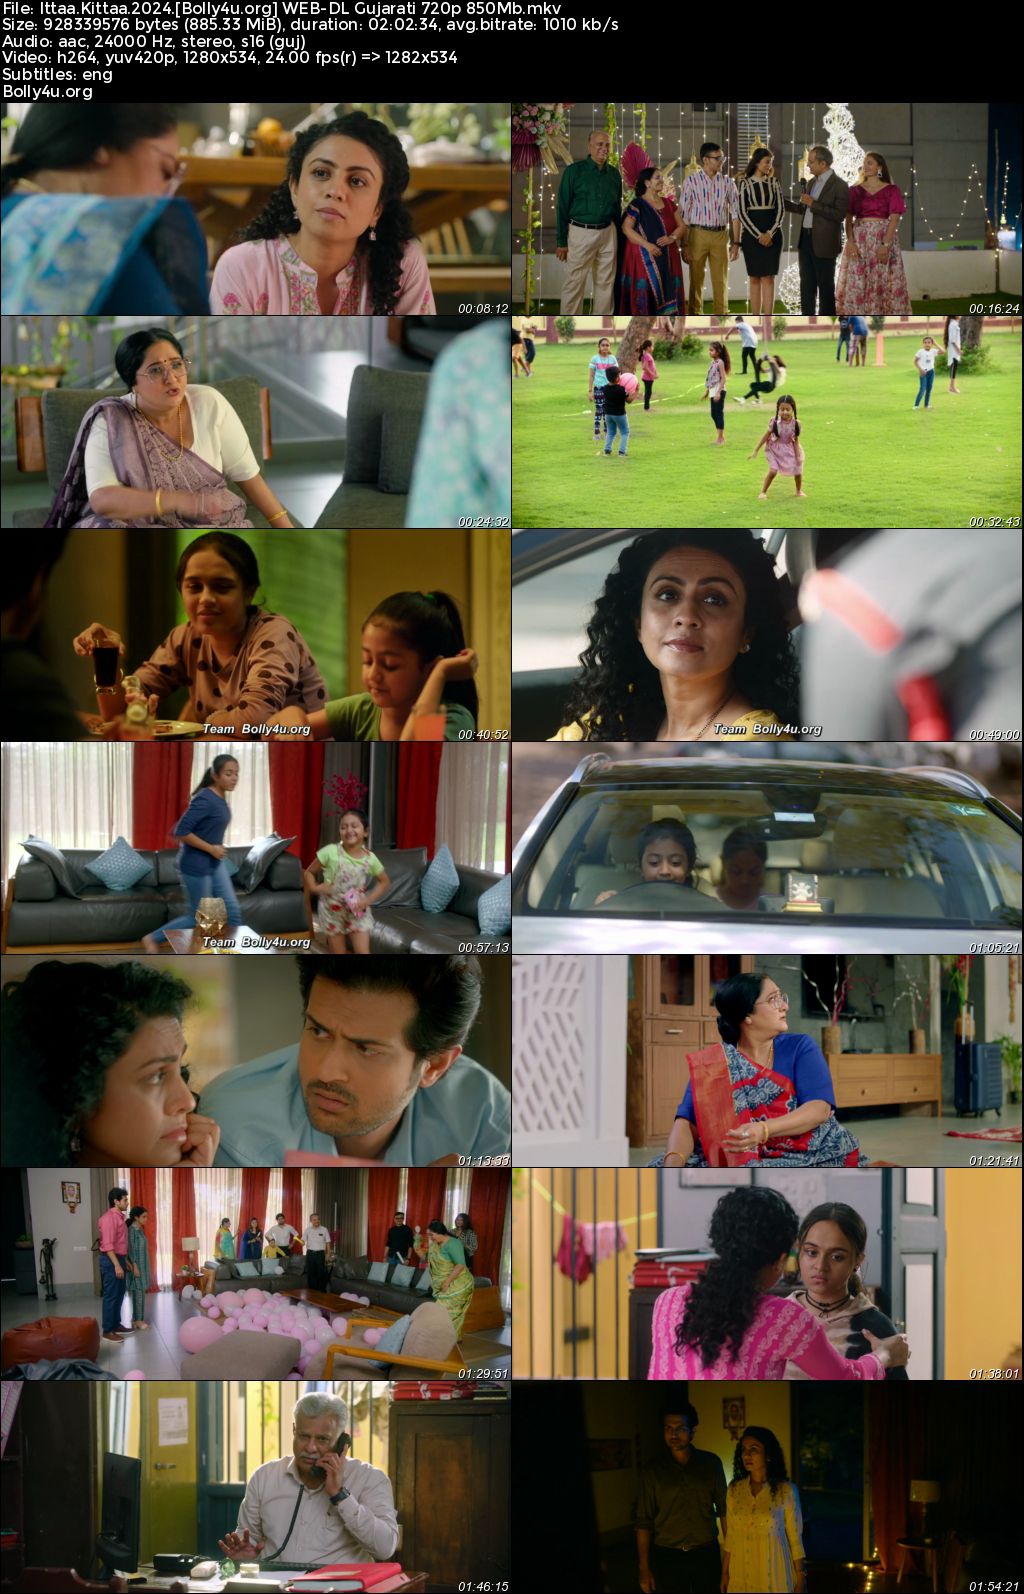 Ittaa Kittaa 2024 WEB-DL Gujarati Full Movie Download 1080p 720p 480p